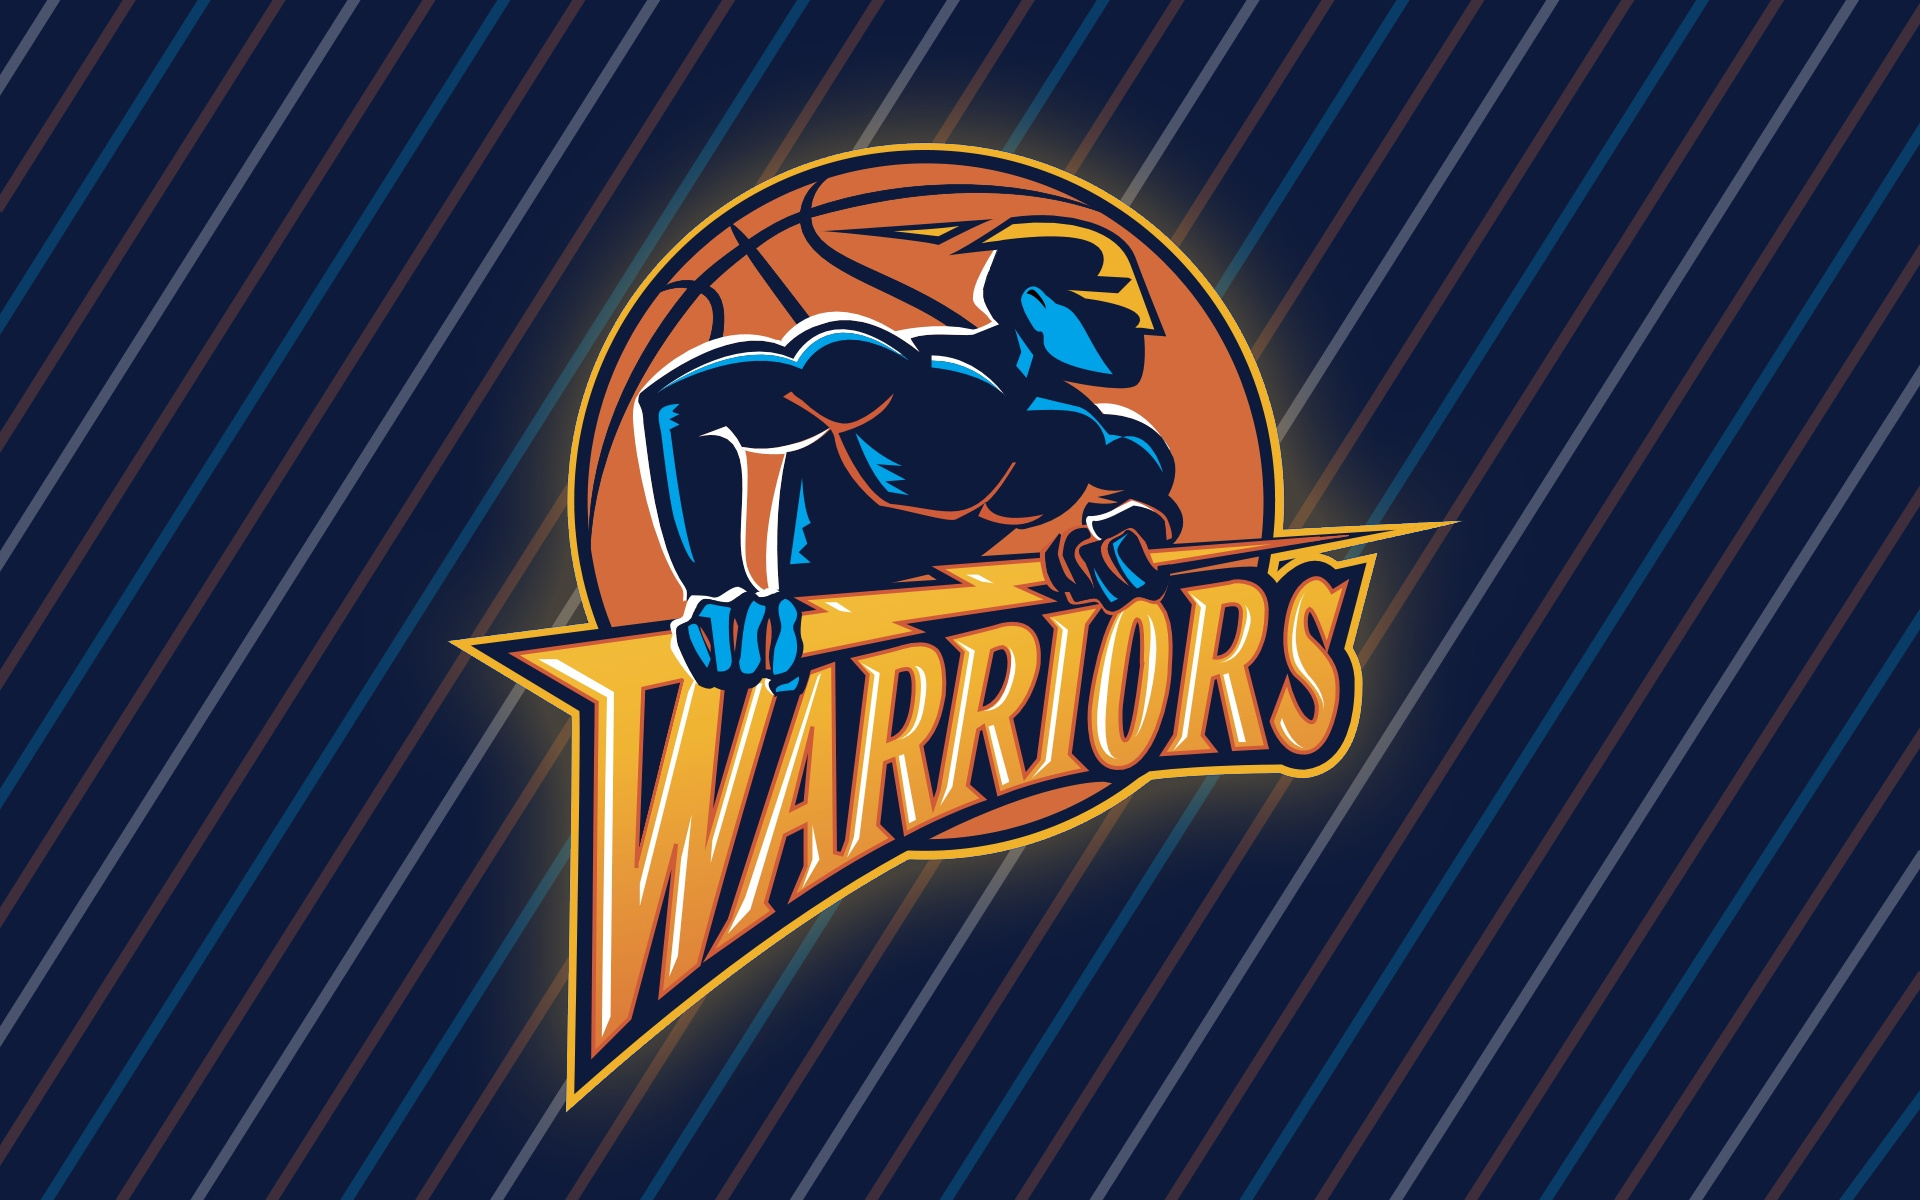 Golden State Warriors, NBA basketball, Sport wallpapers, Team logo, 1920x1200 HD Desktop